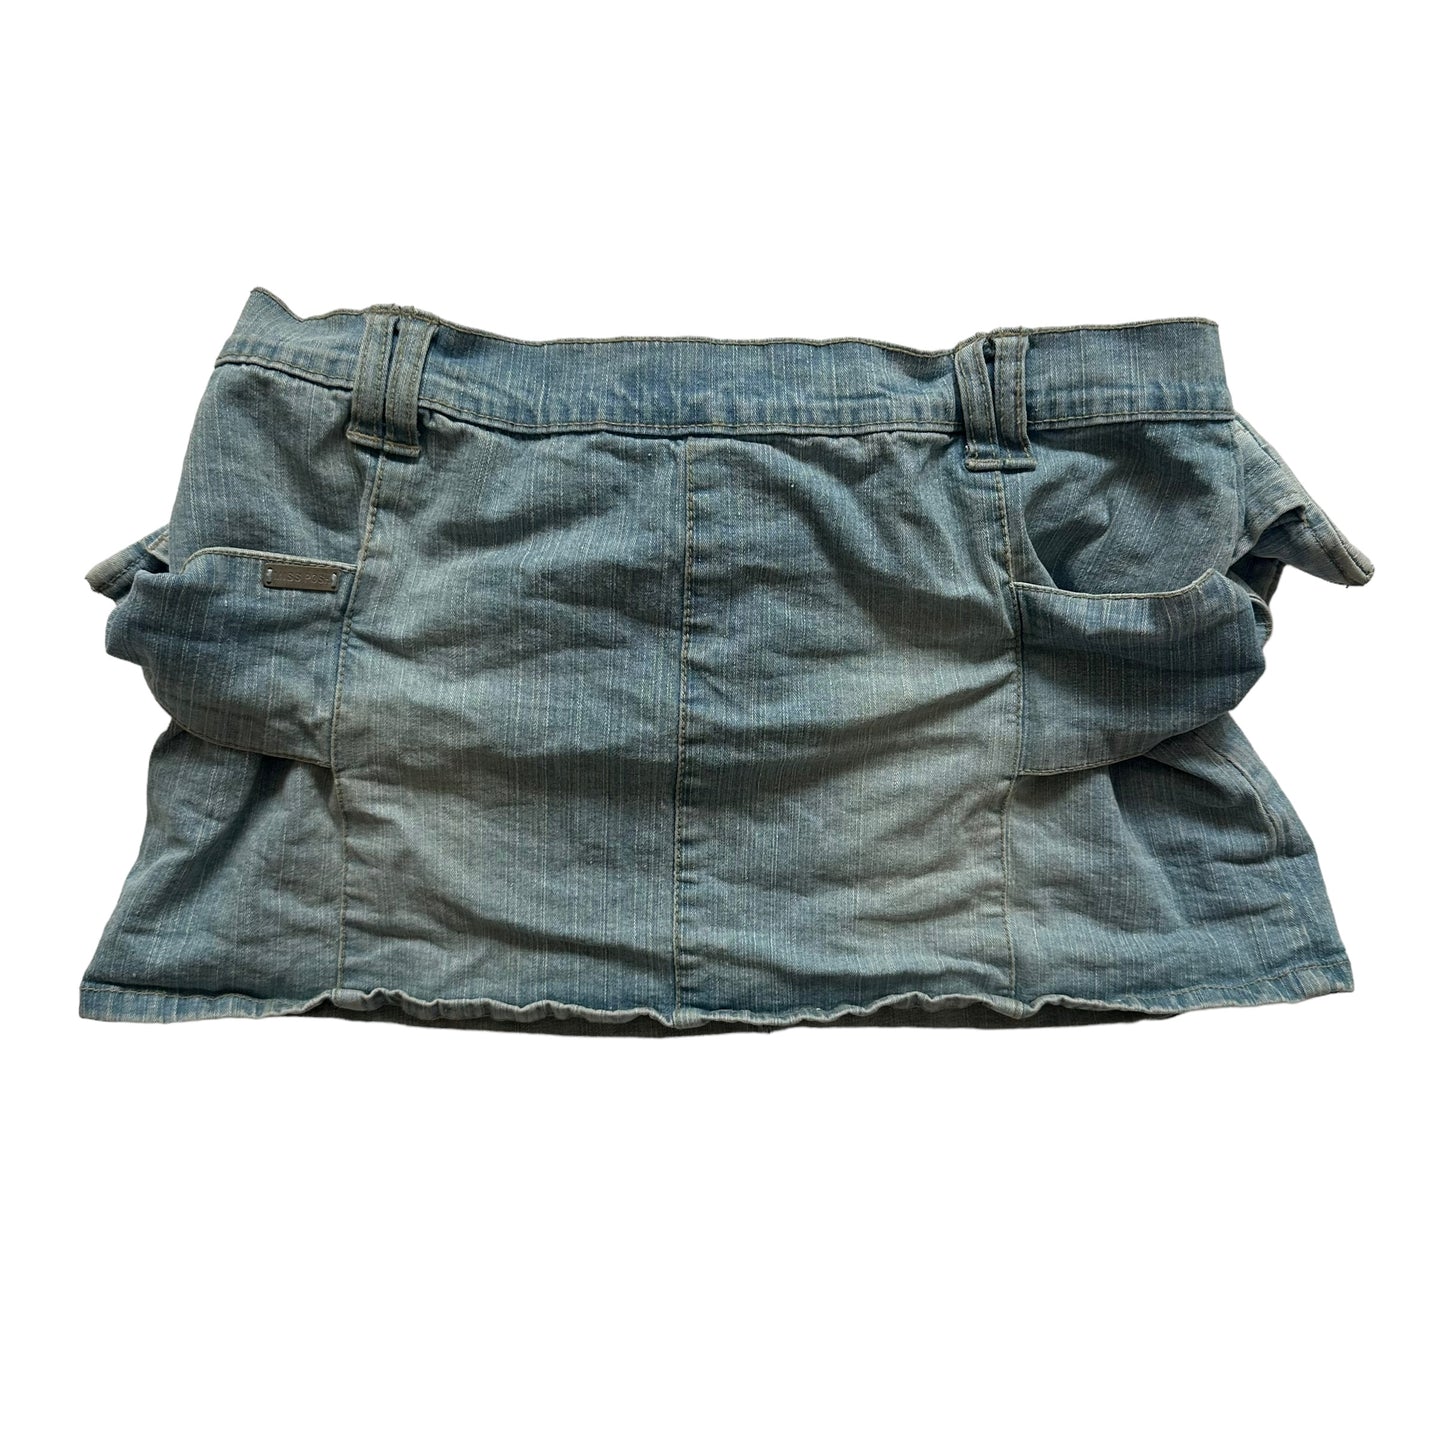 Belted Cargo Skirt